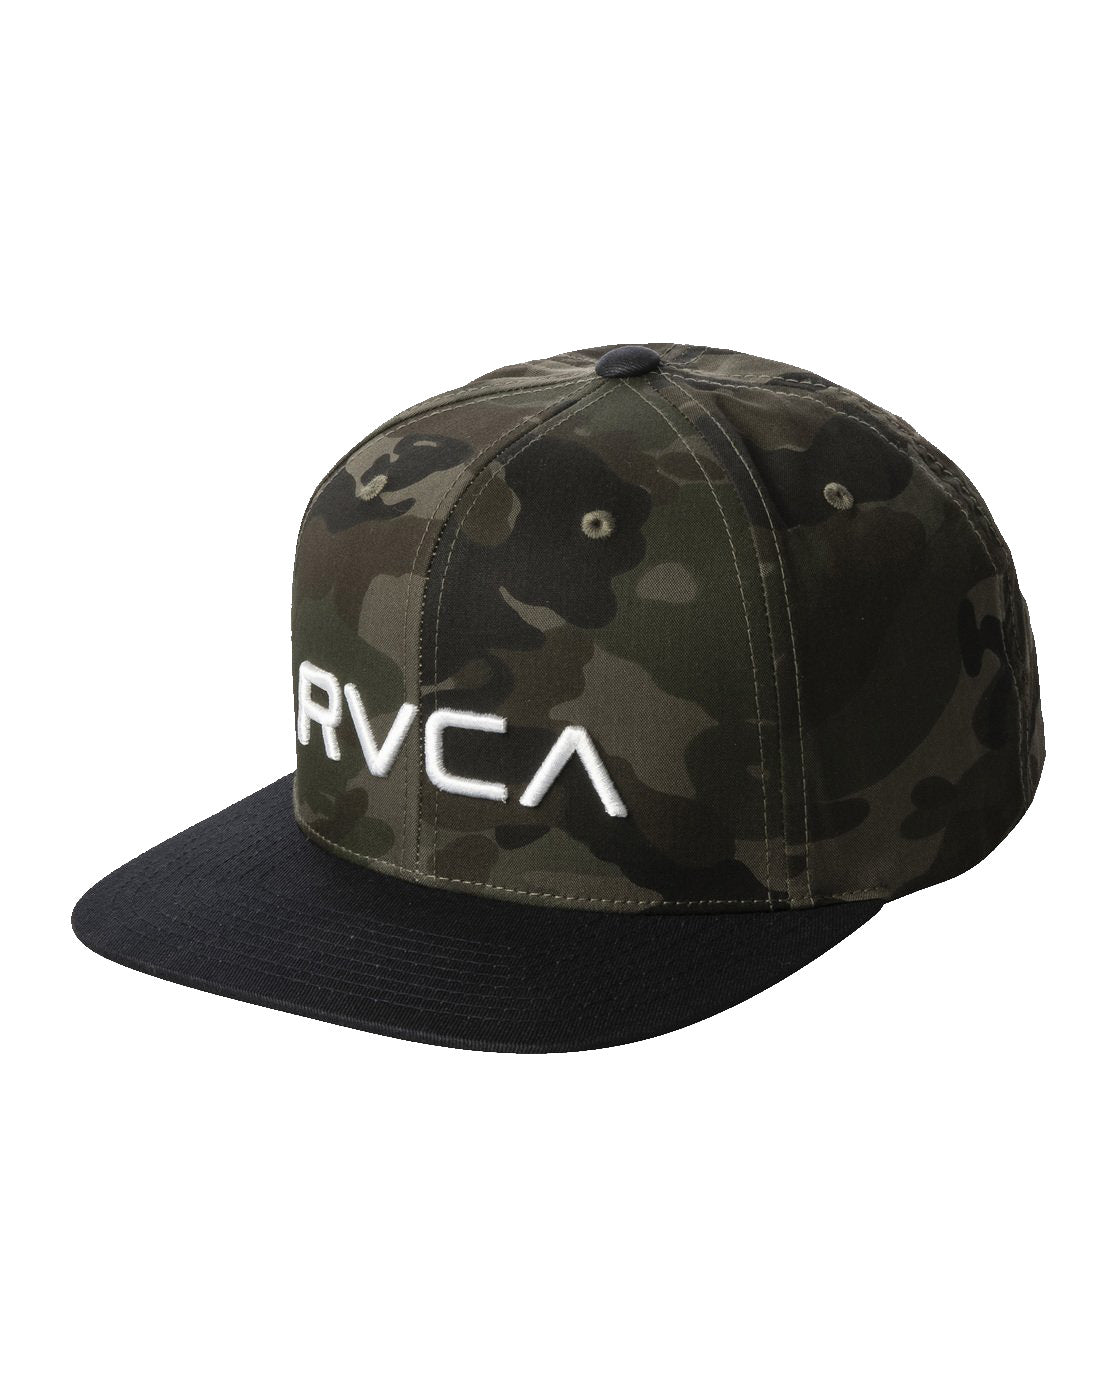 RVCA Twill Snapback Hat